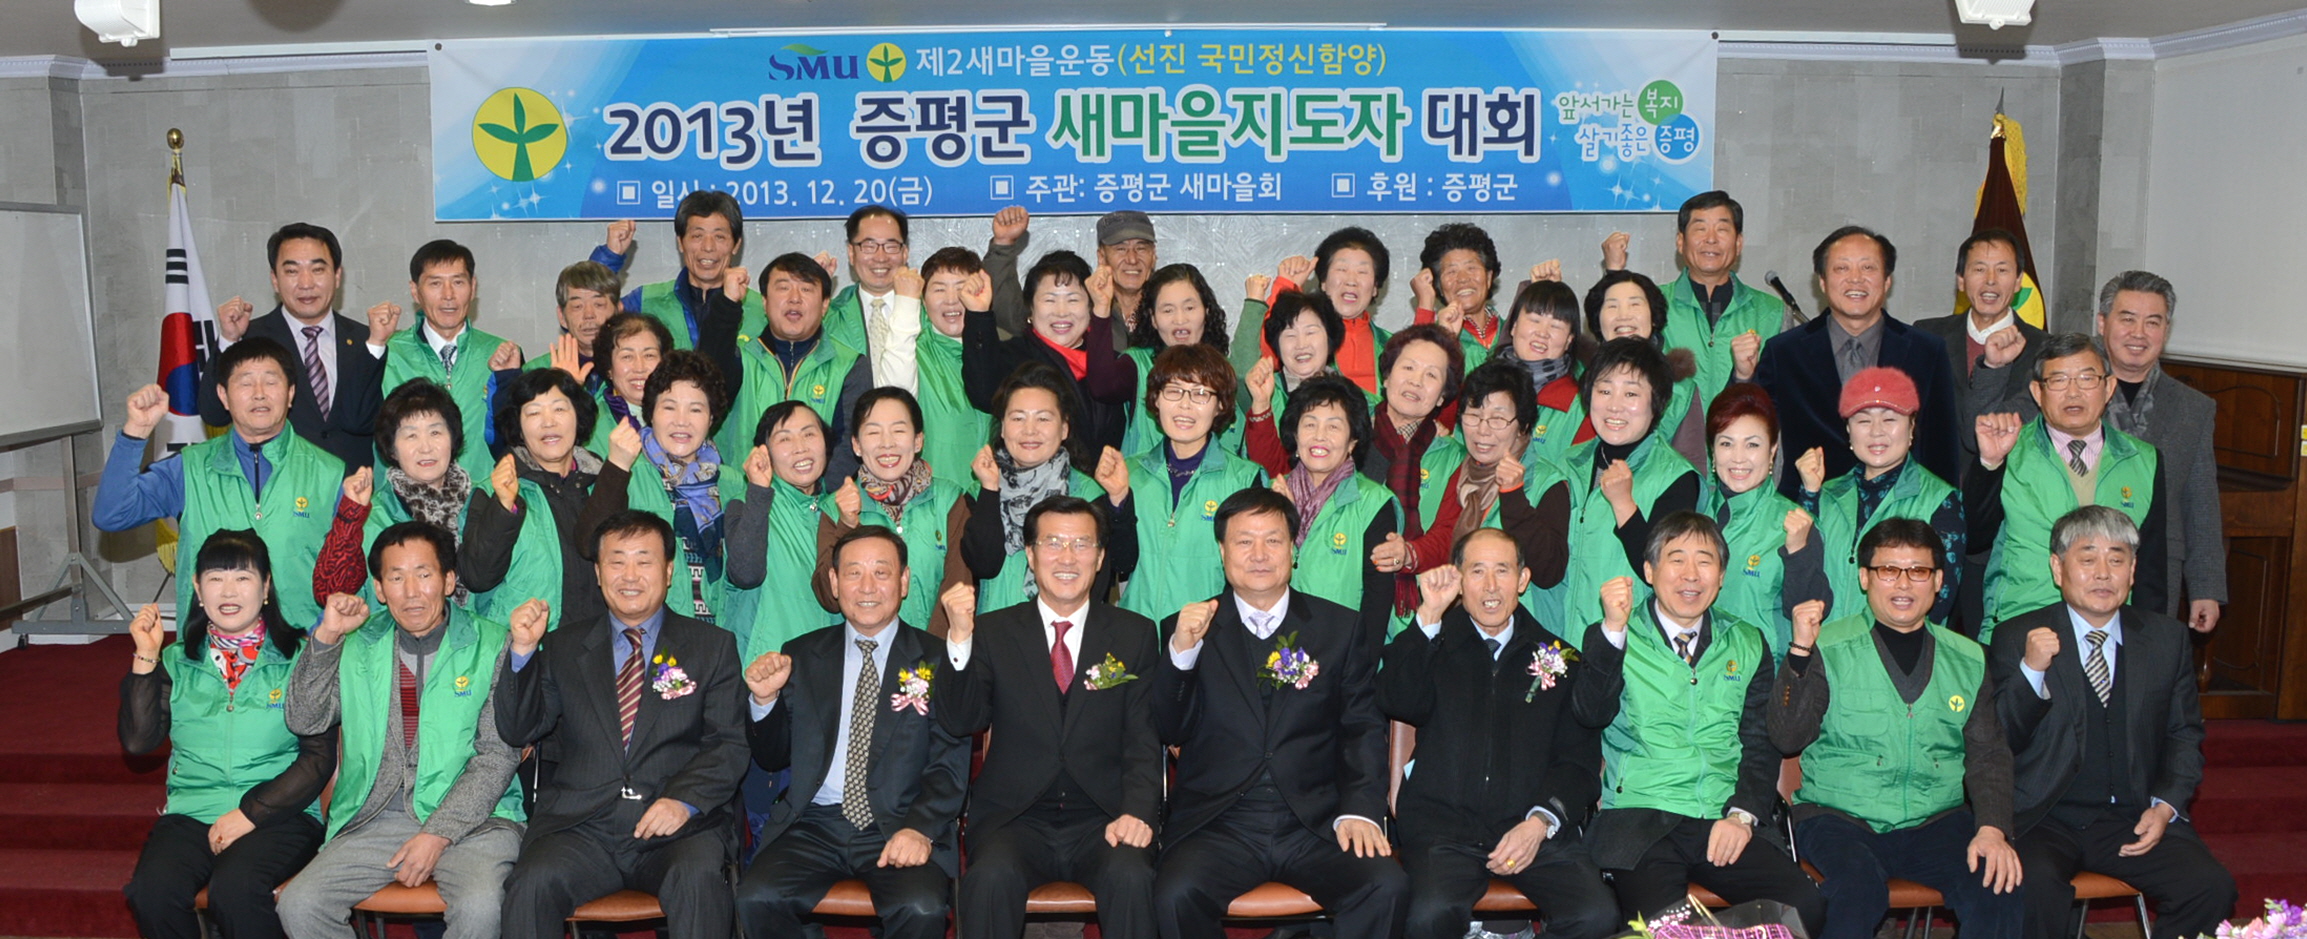 증평군새마을회, 2013 증평군새마을지도자 대회 개최